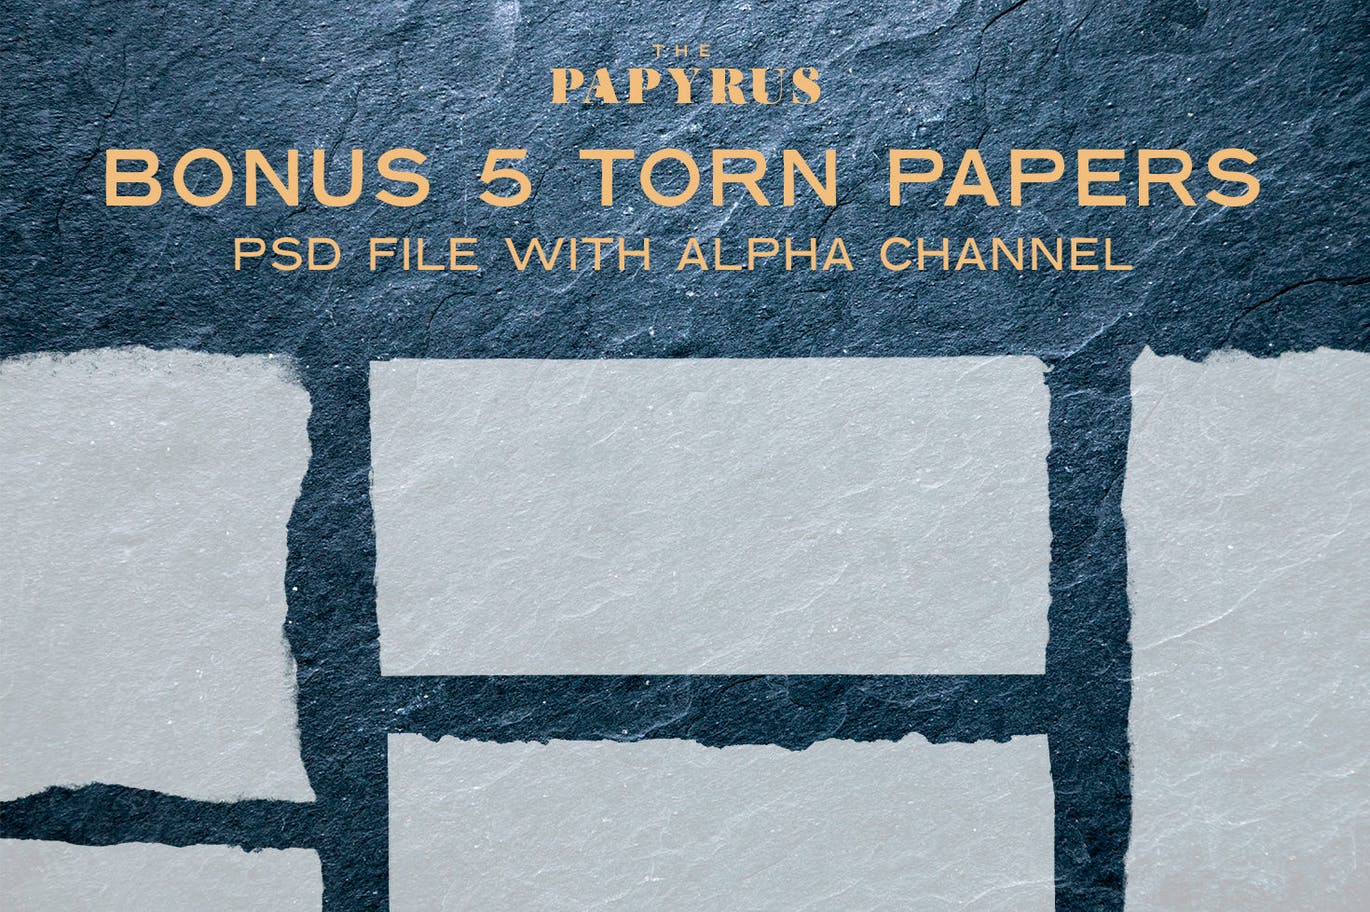 65个莎草纸纸张纹理合集 The Papyrus – 65 Paper Textures 图片素材 第4张